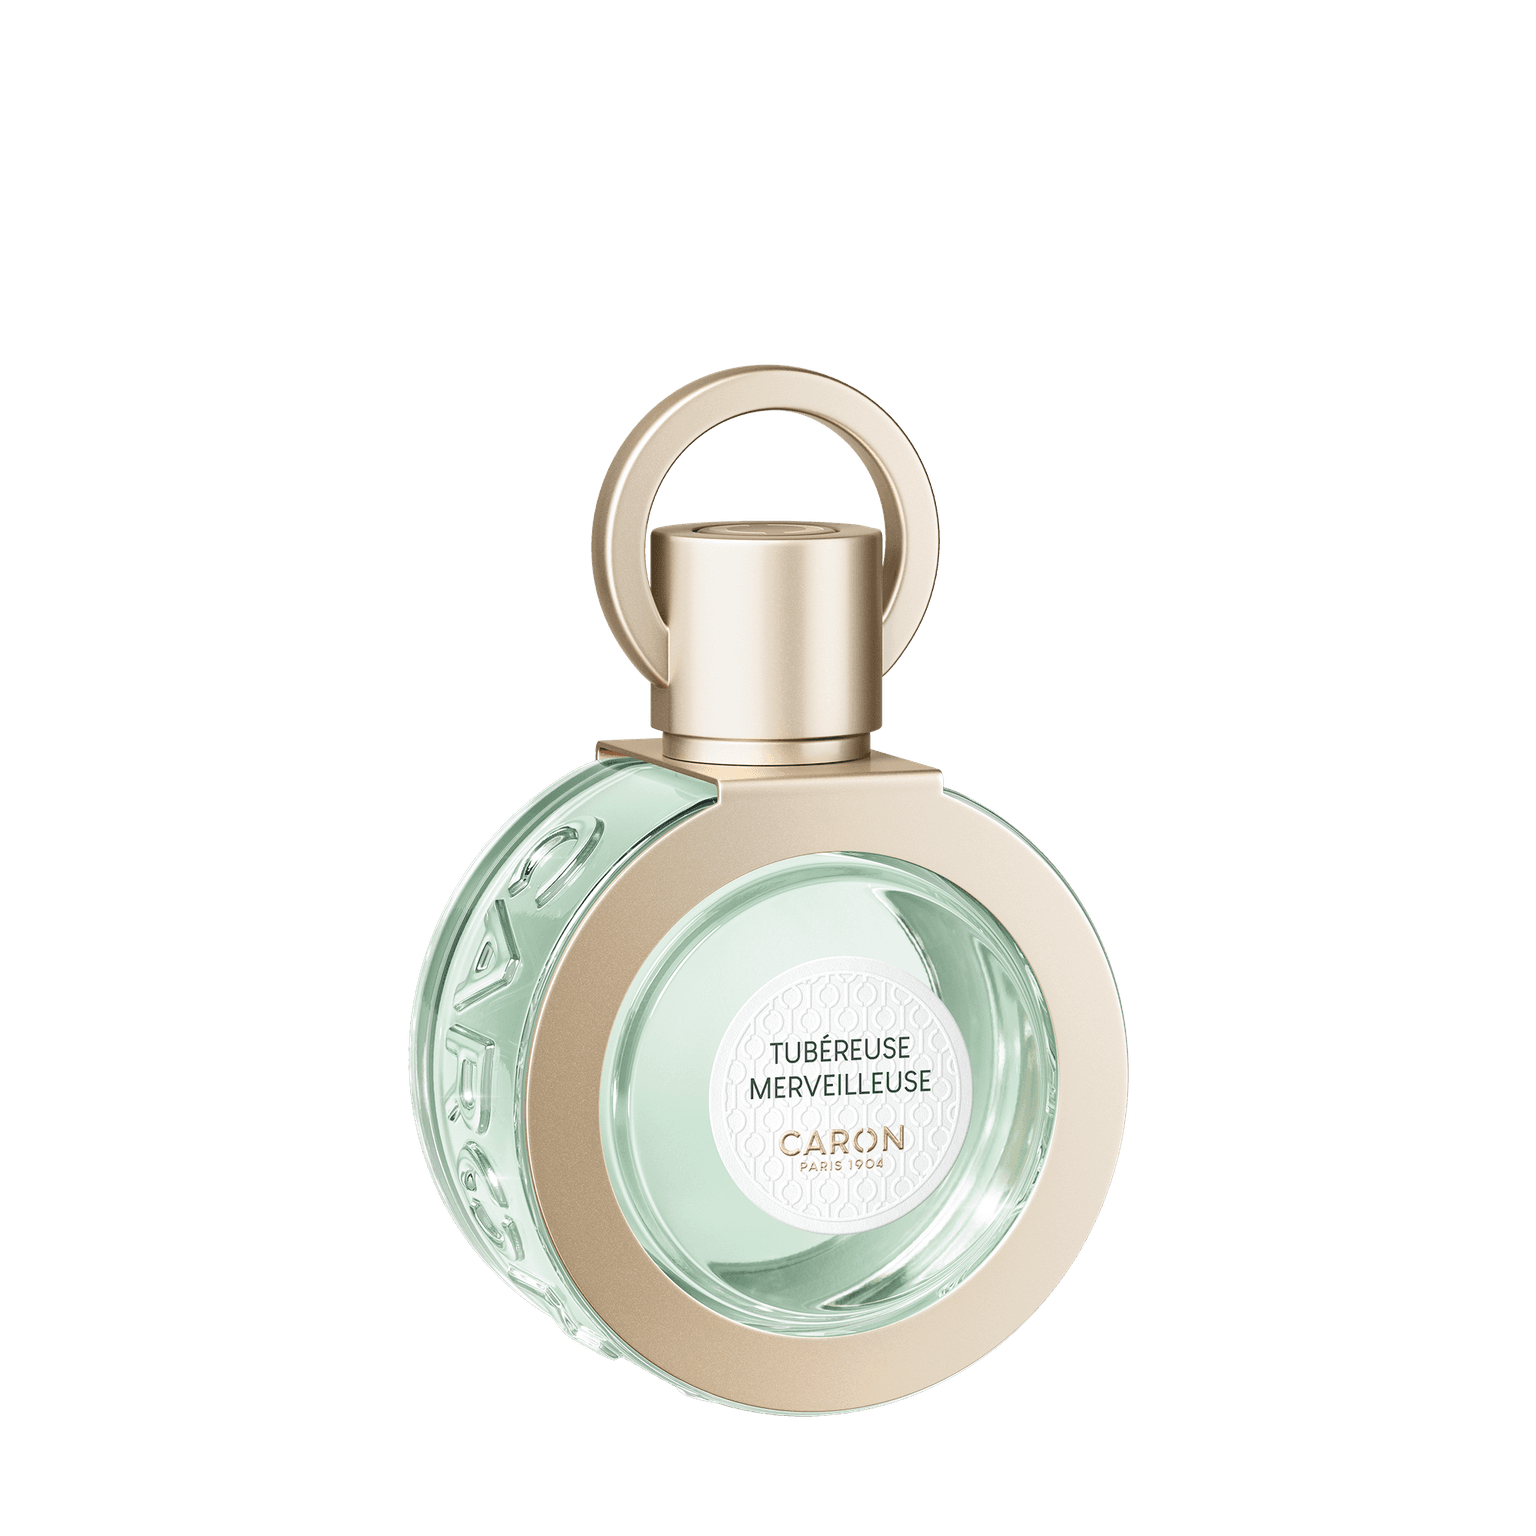 Caron Tubereuse Merveilleuse 50ml | Perfume Lounge.